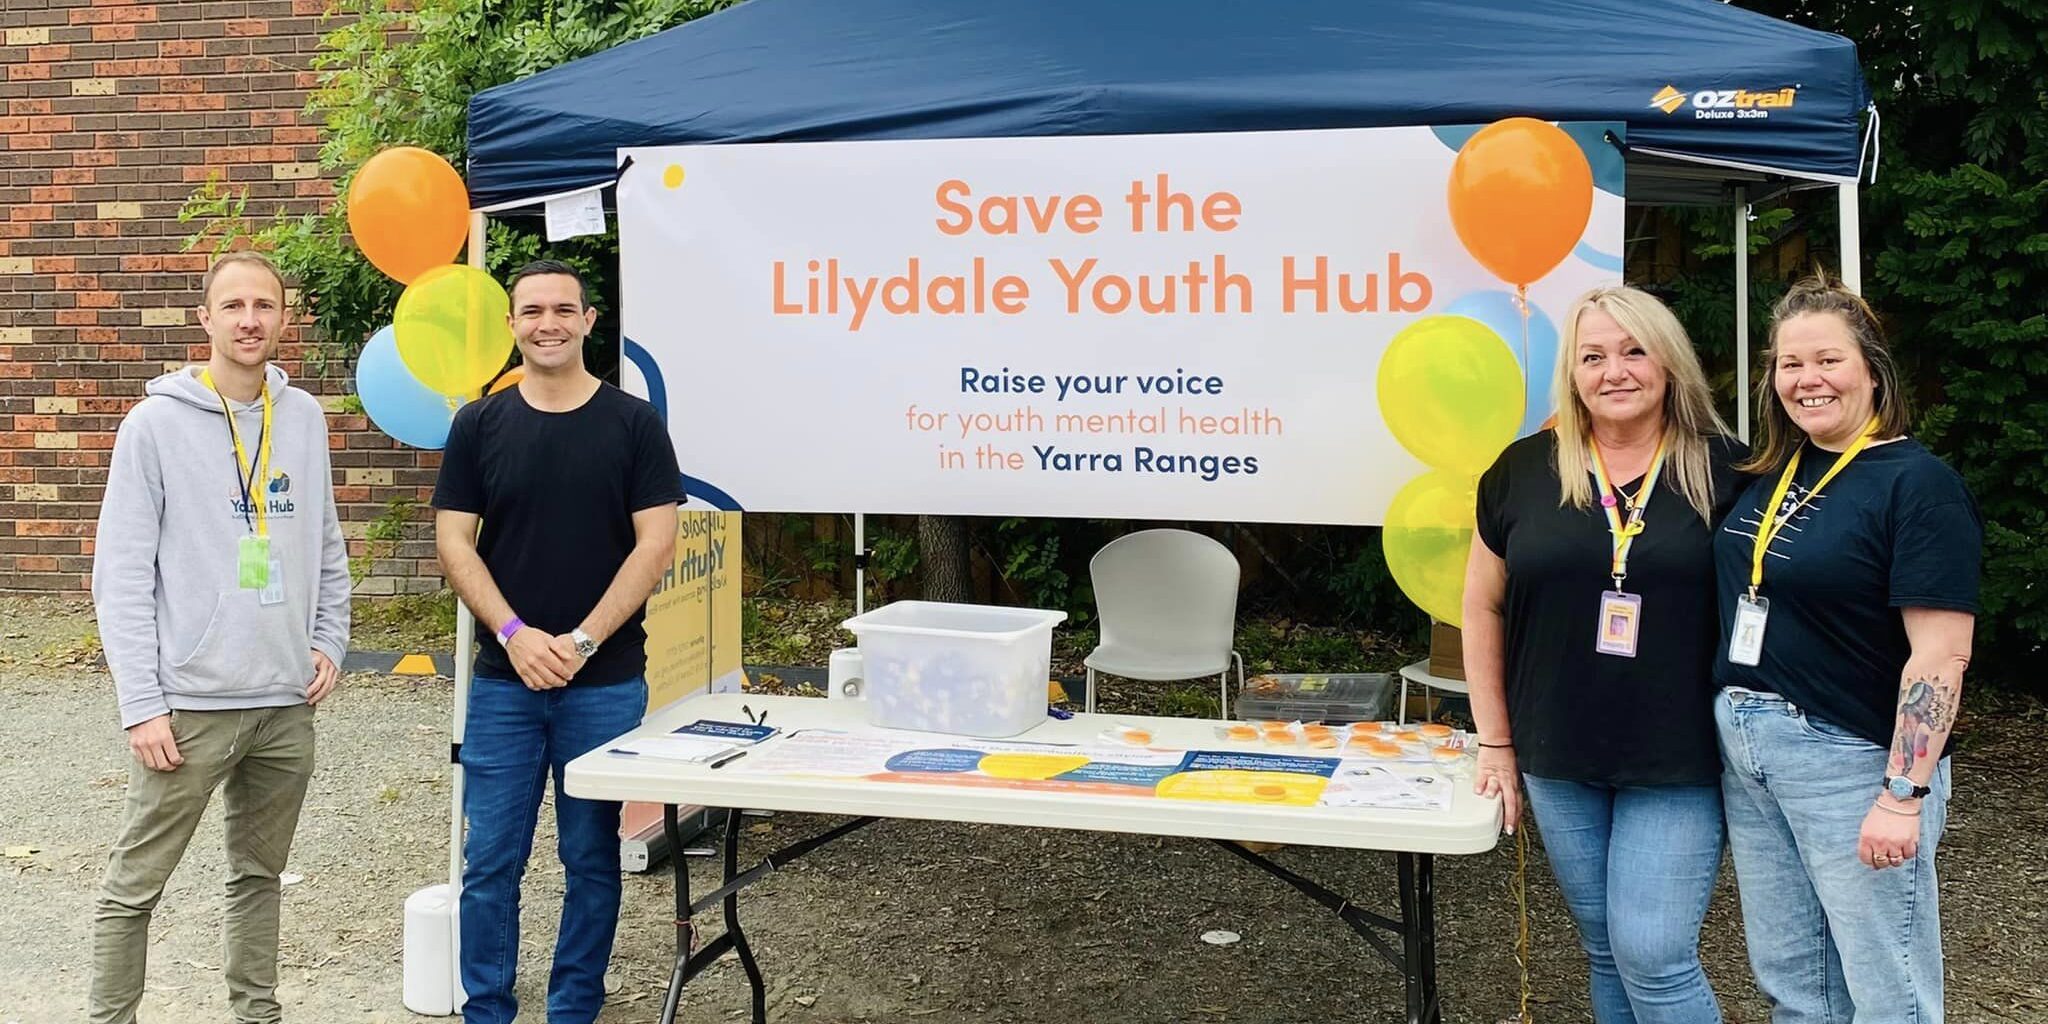 Lilydale Youth Hub